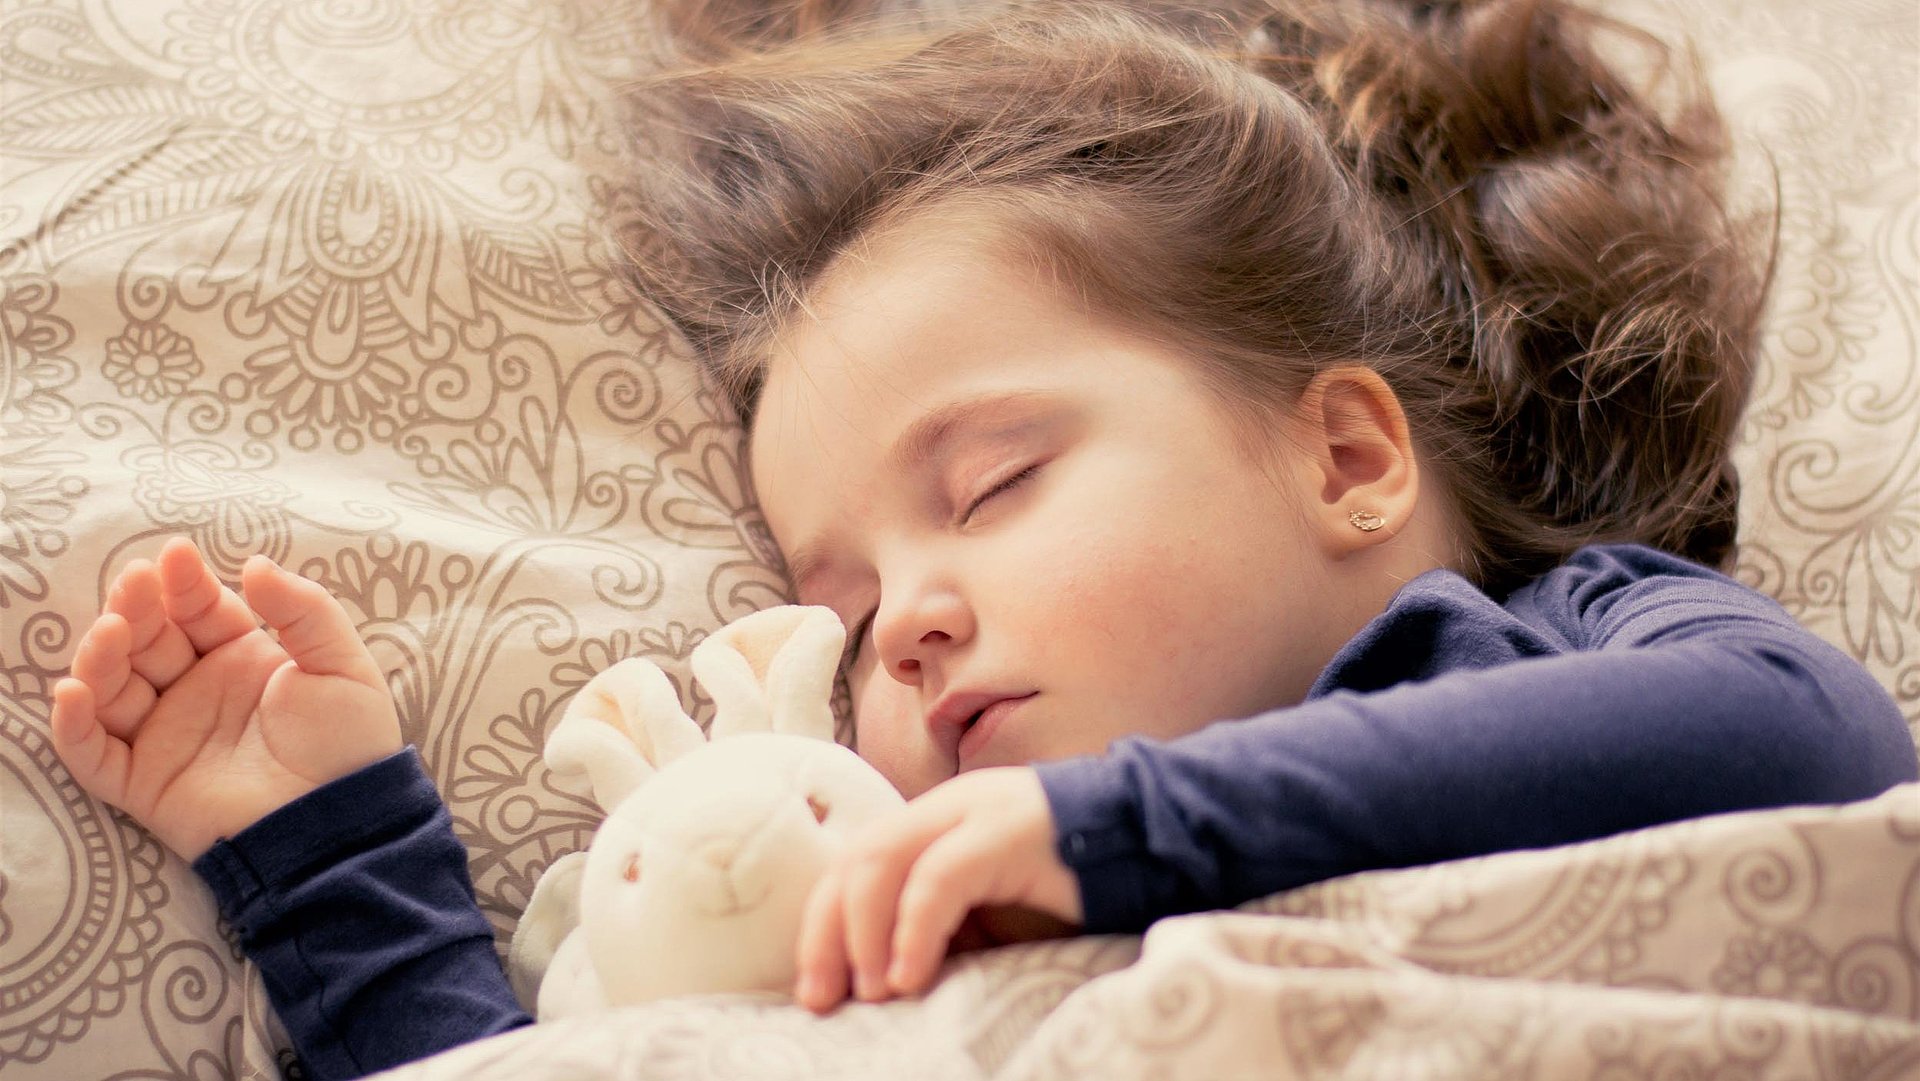 Kinderfreundliche Unterkünfte in Franken - kleines Mädchen mit Plüschtierhäschen liegt schlafend im Bett